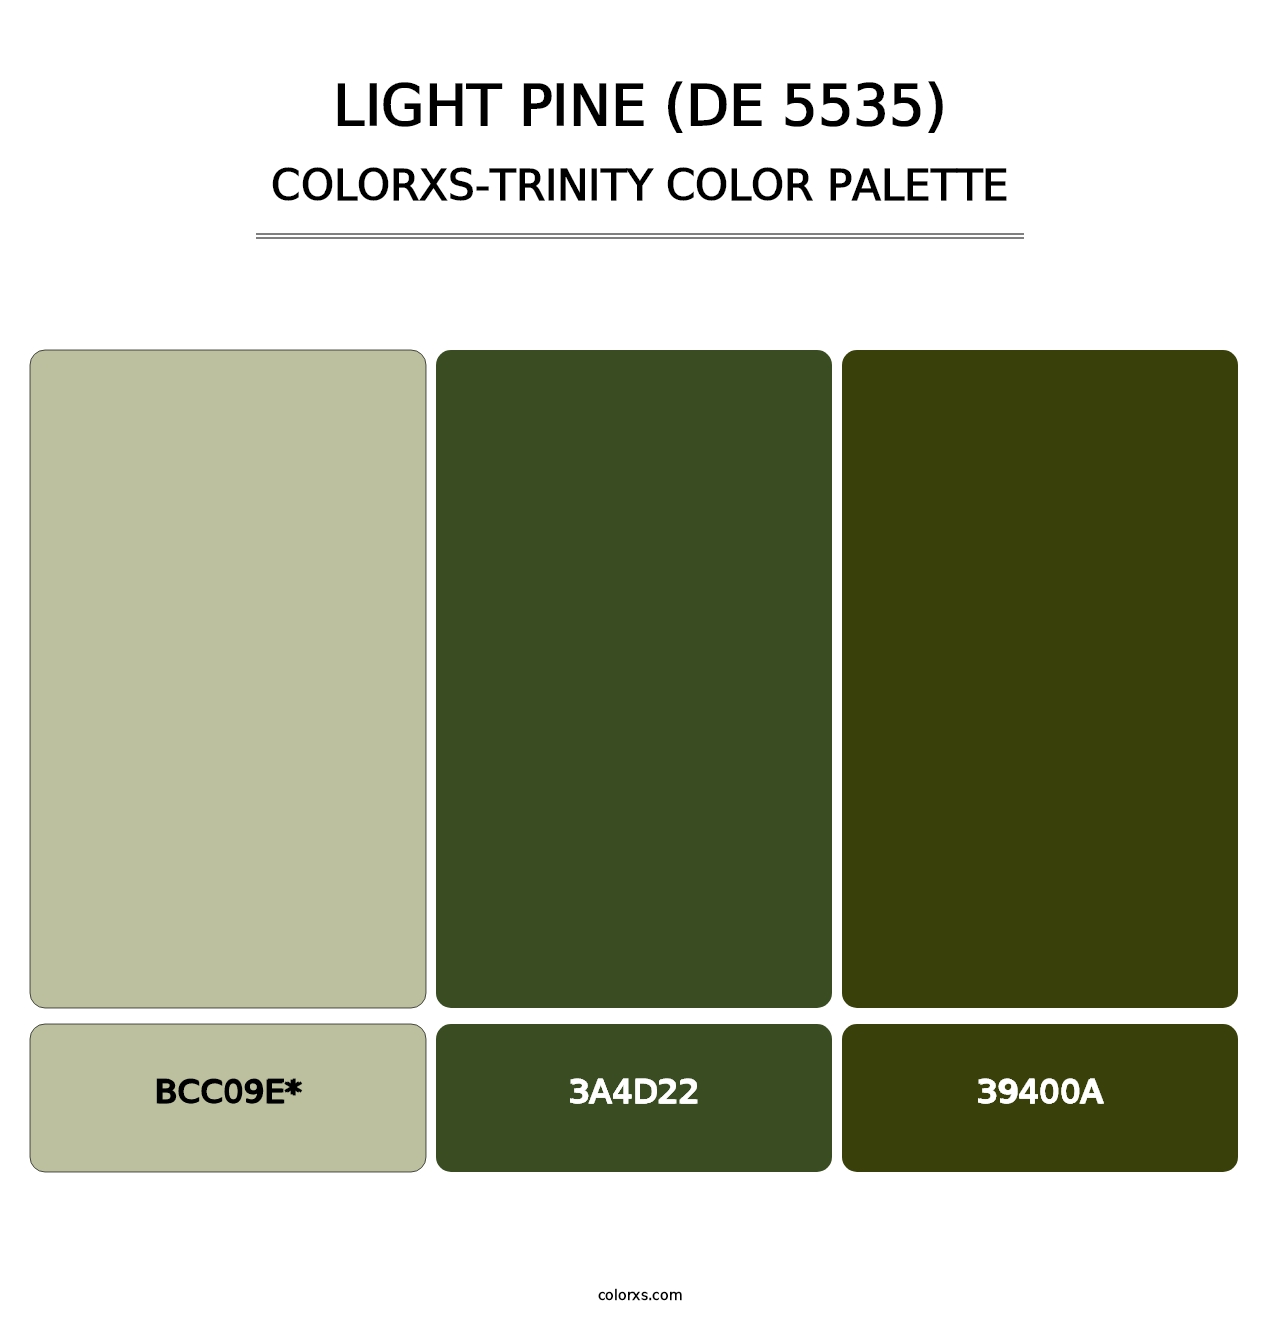 Light Pine (DE 5535) - Colorxs Trinity Palette